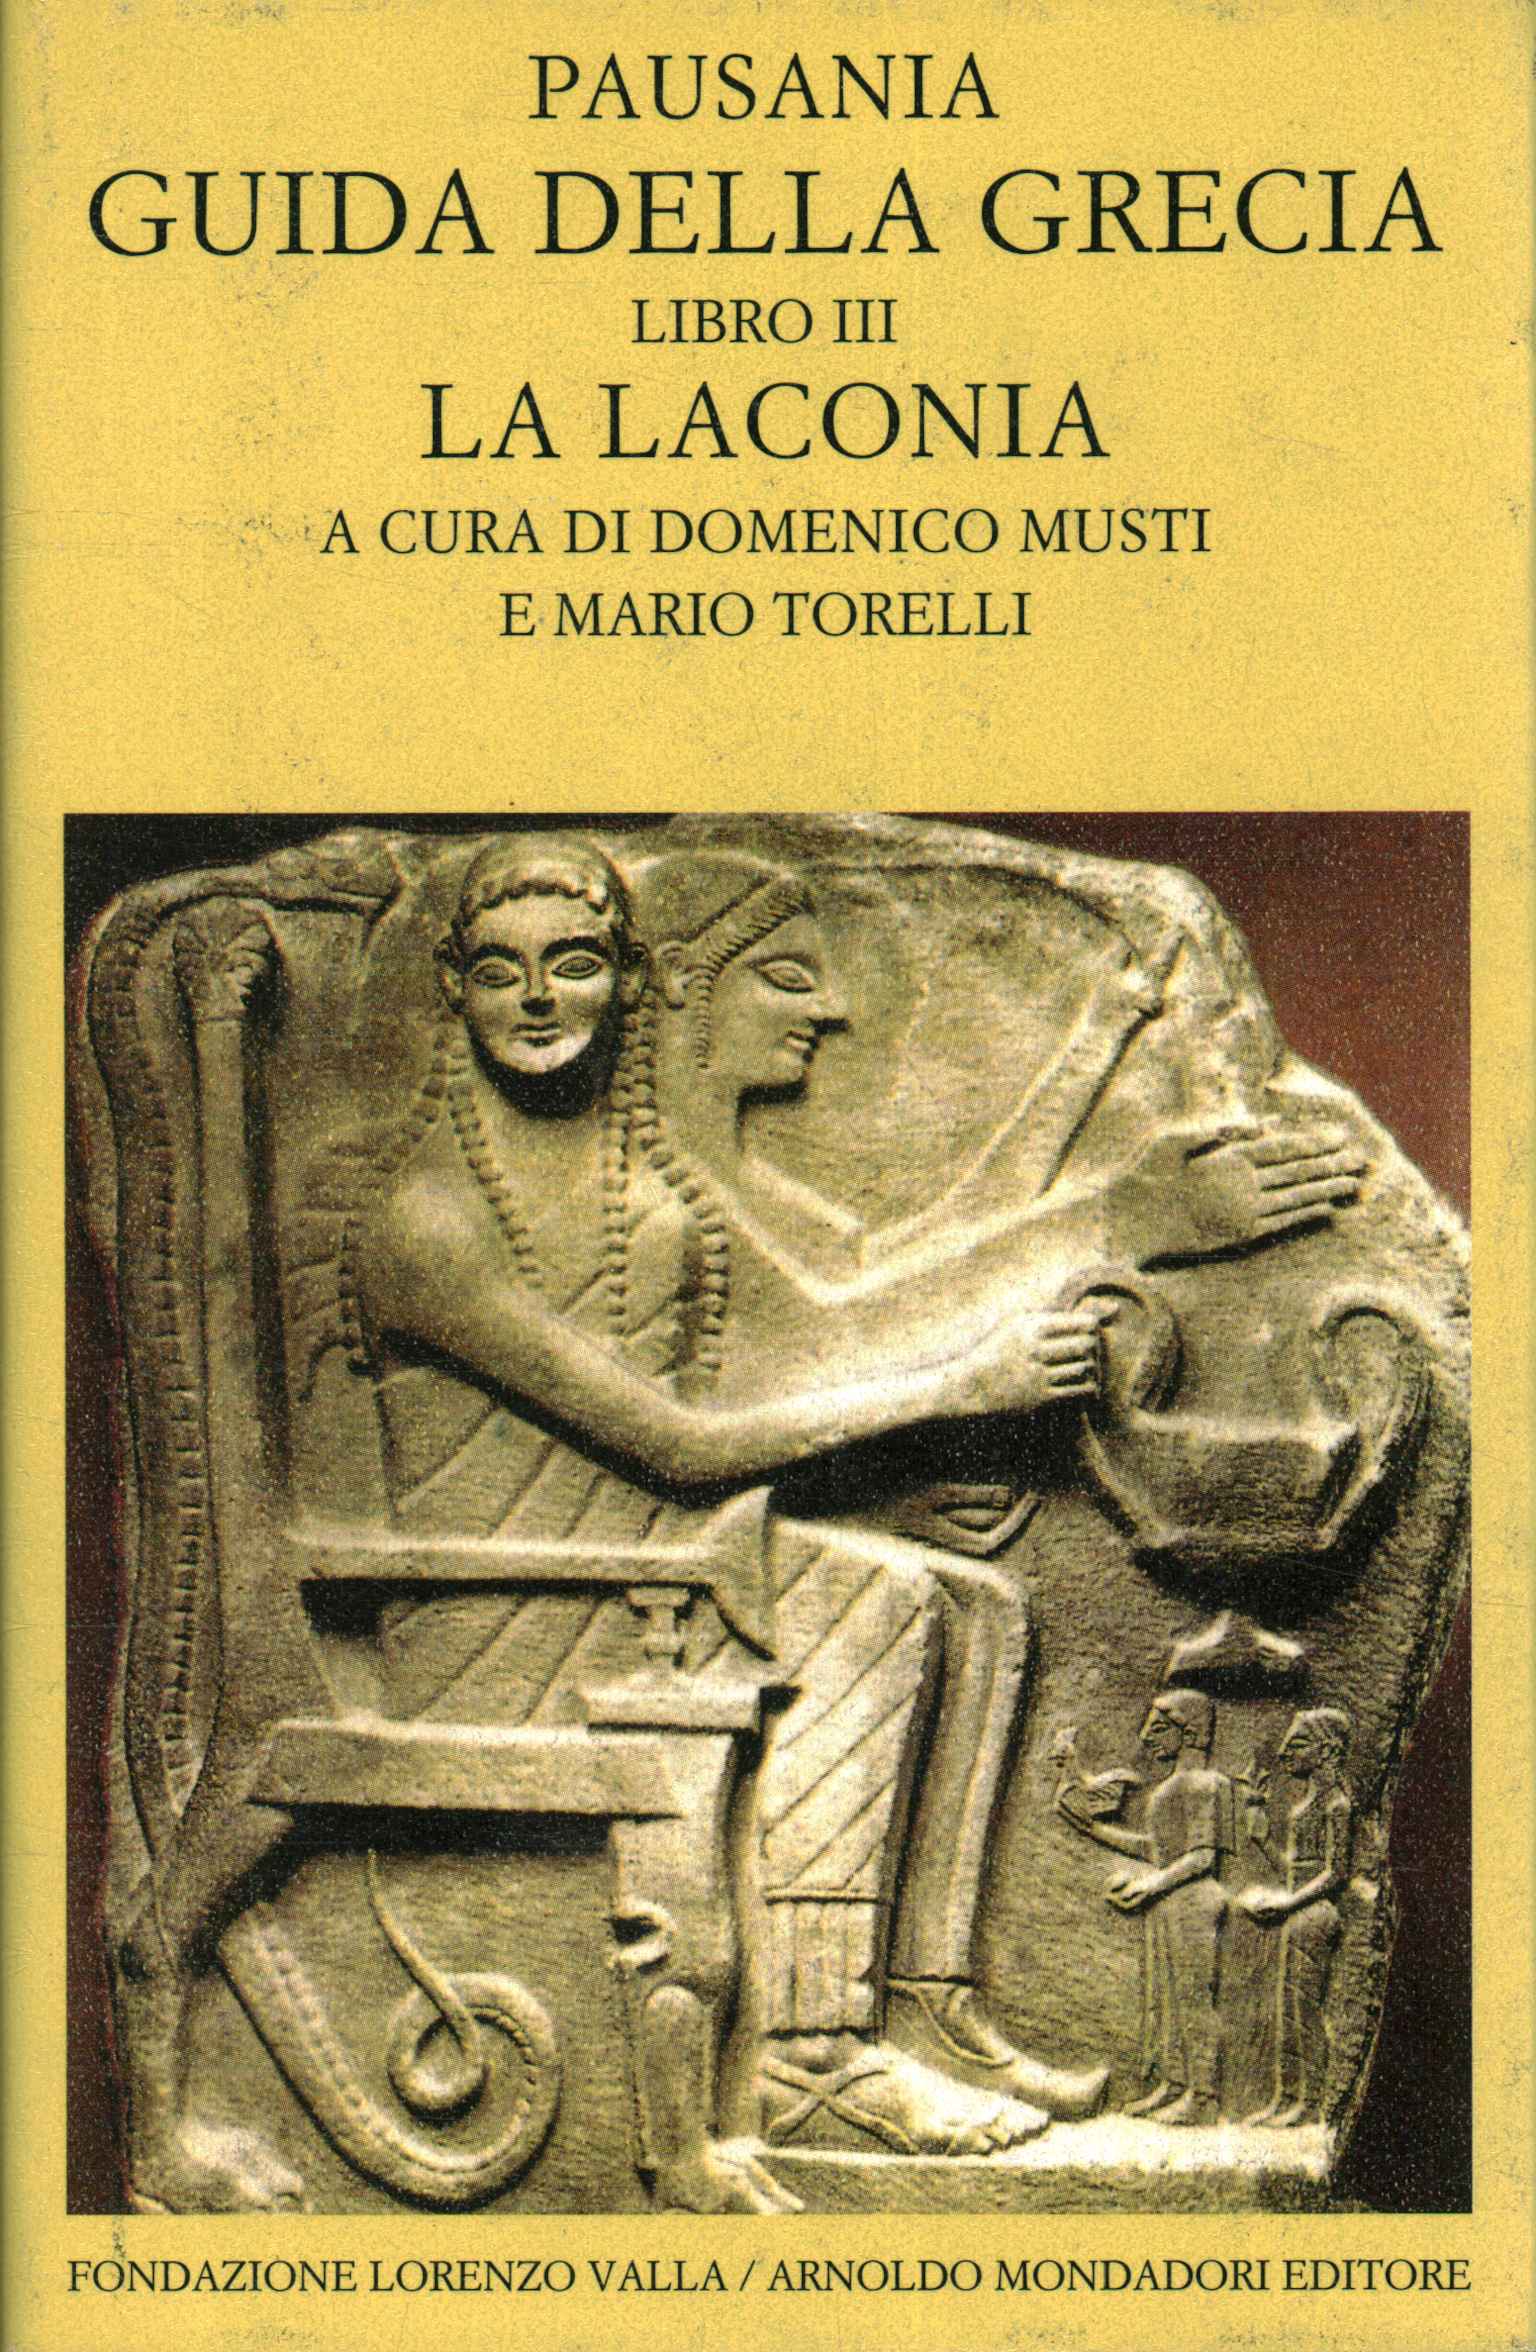 Guía de Grecia libro III. La Lacon, Guía de Grecia (Volumen 3). el laco